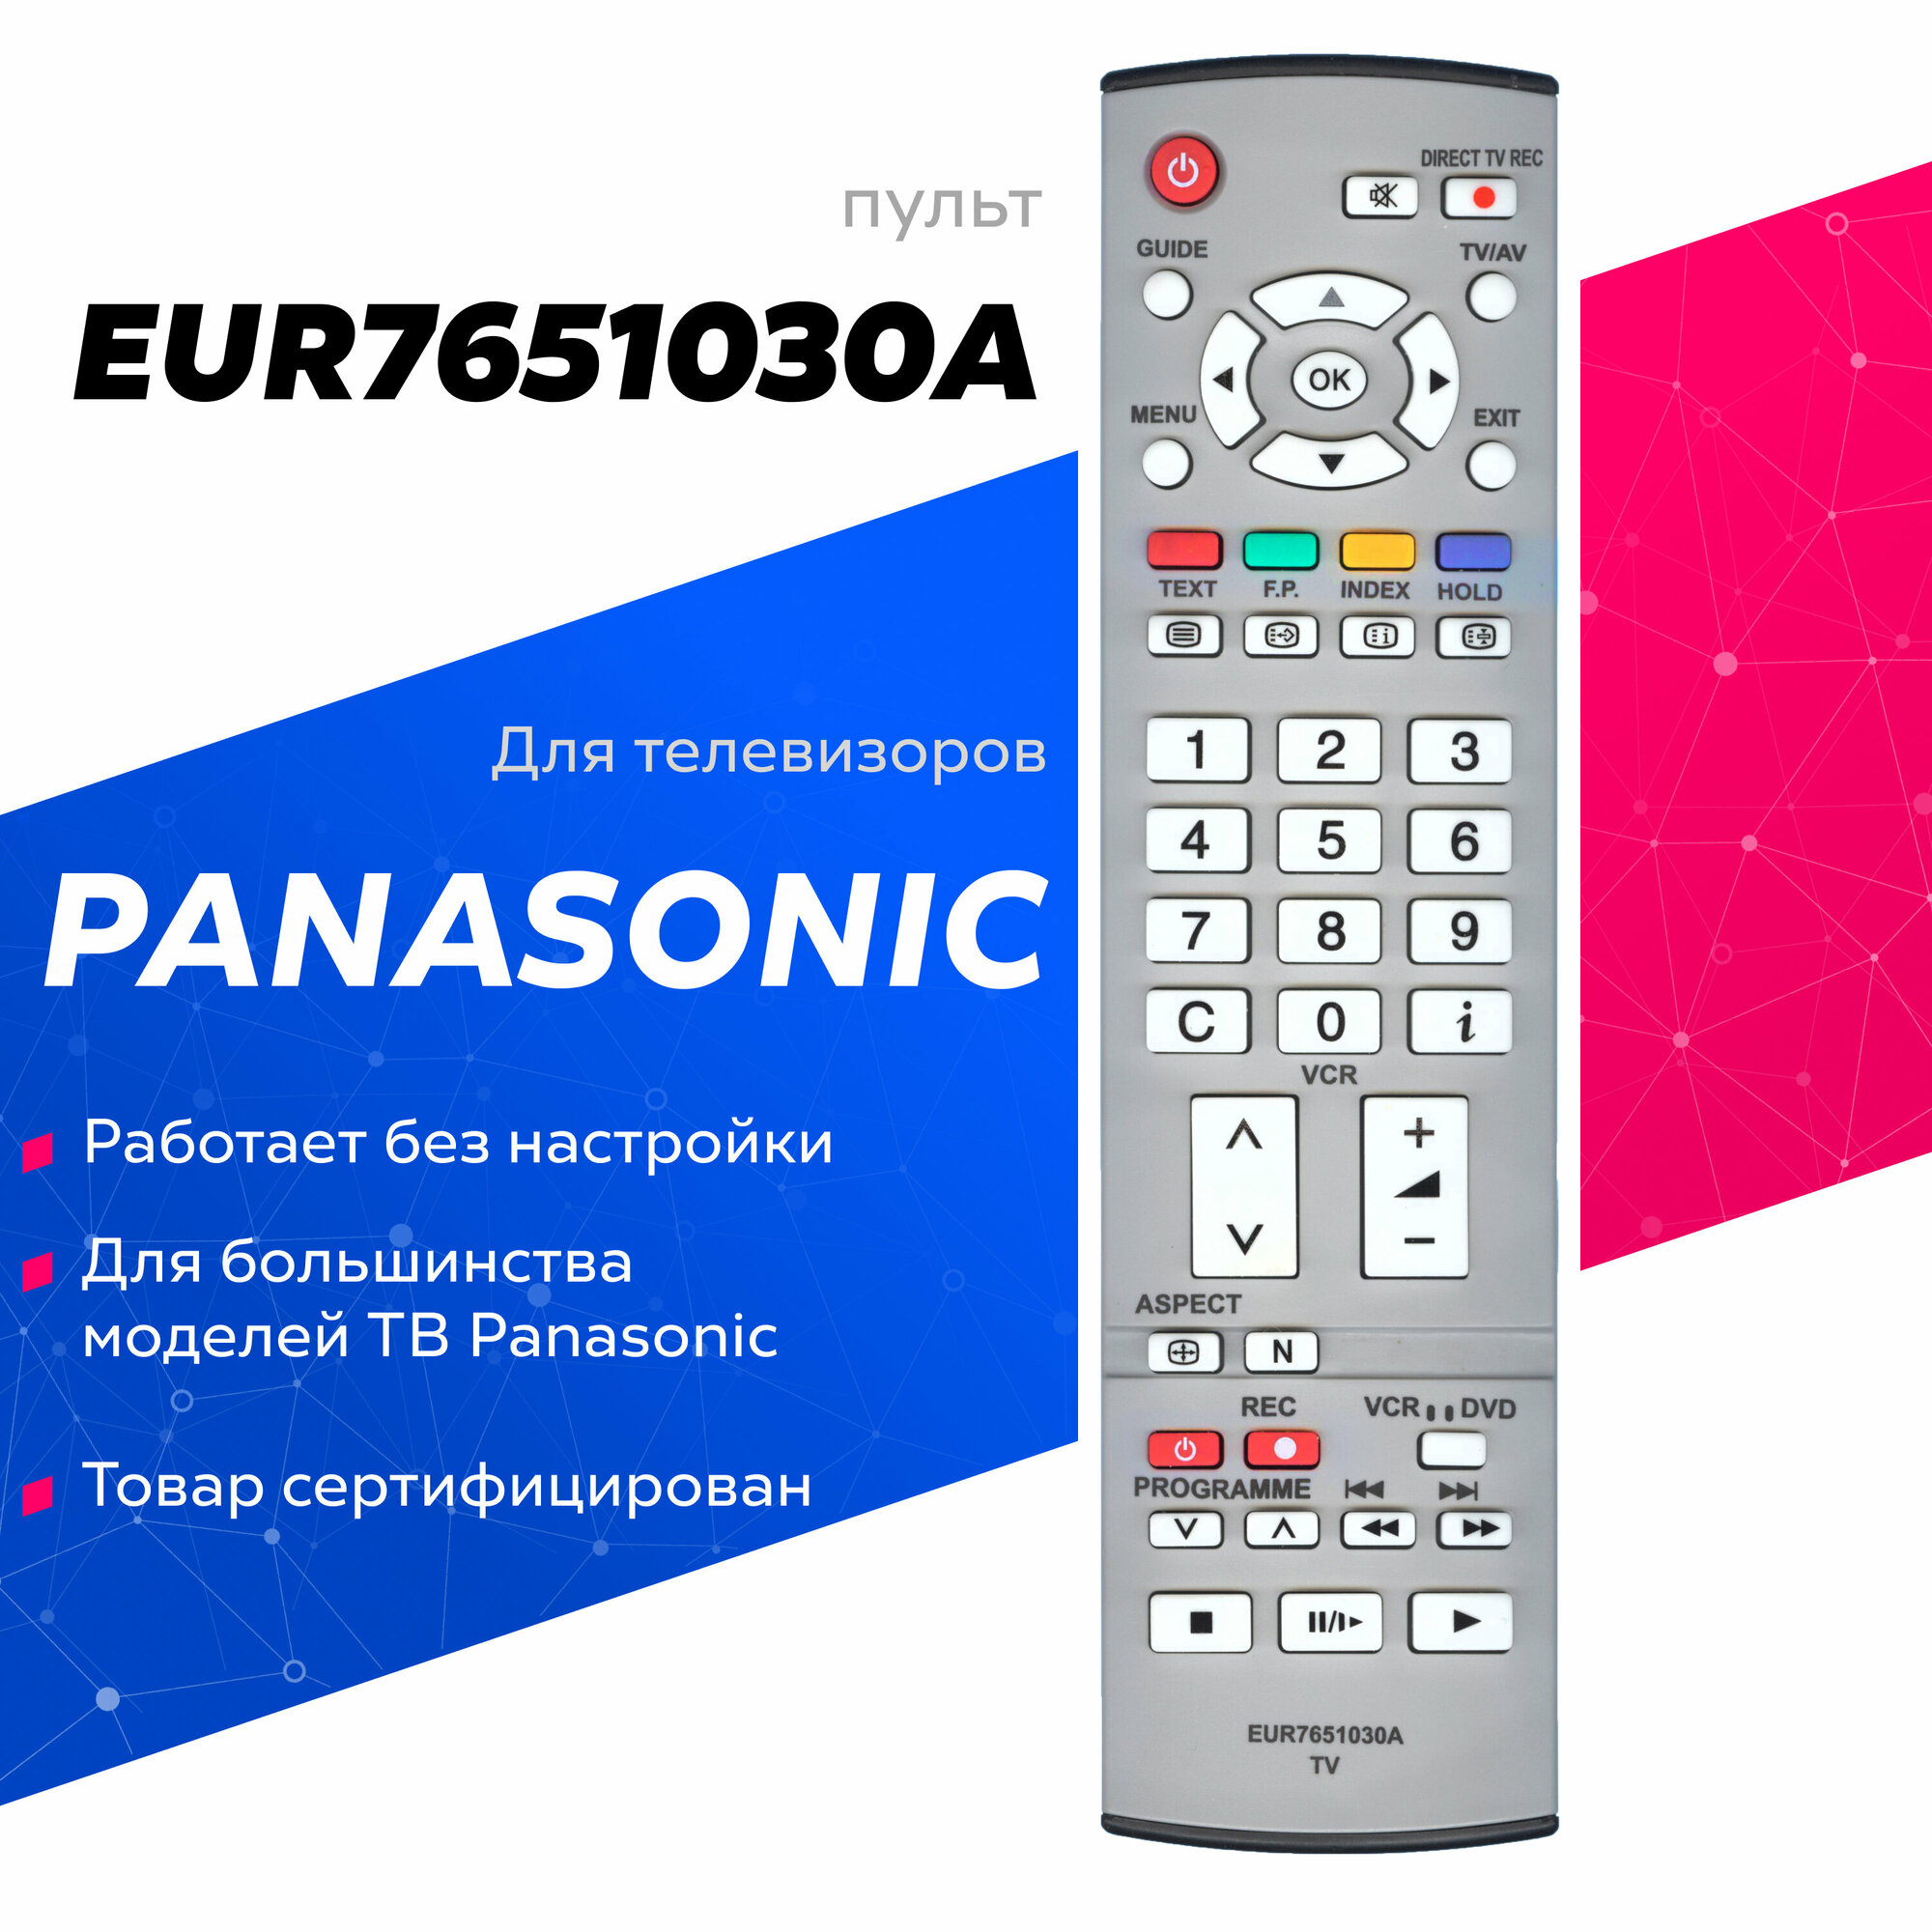 Пульт Huayu EUR7651030A для телевизоров Panasonic